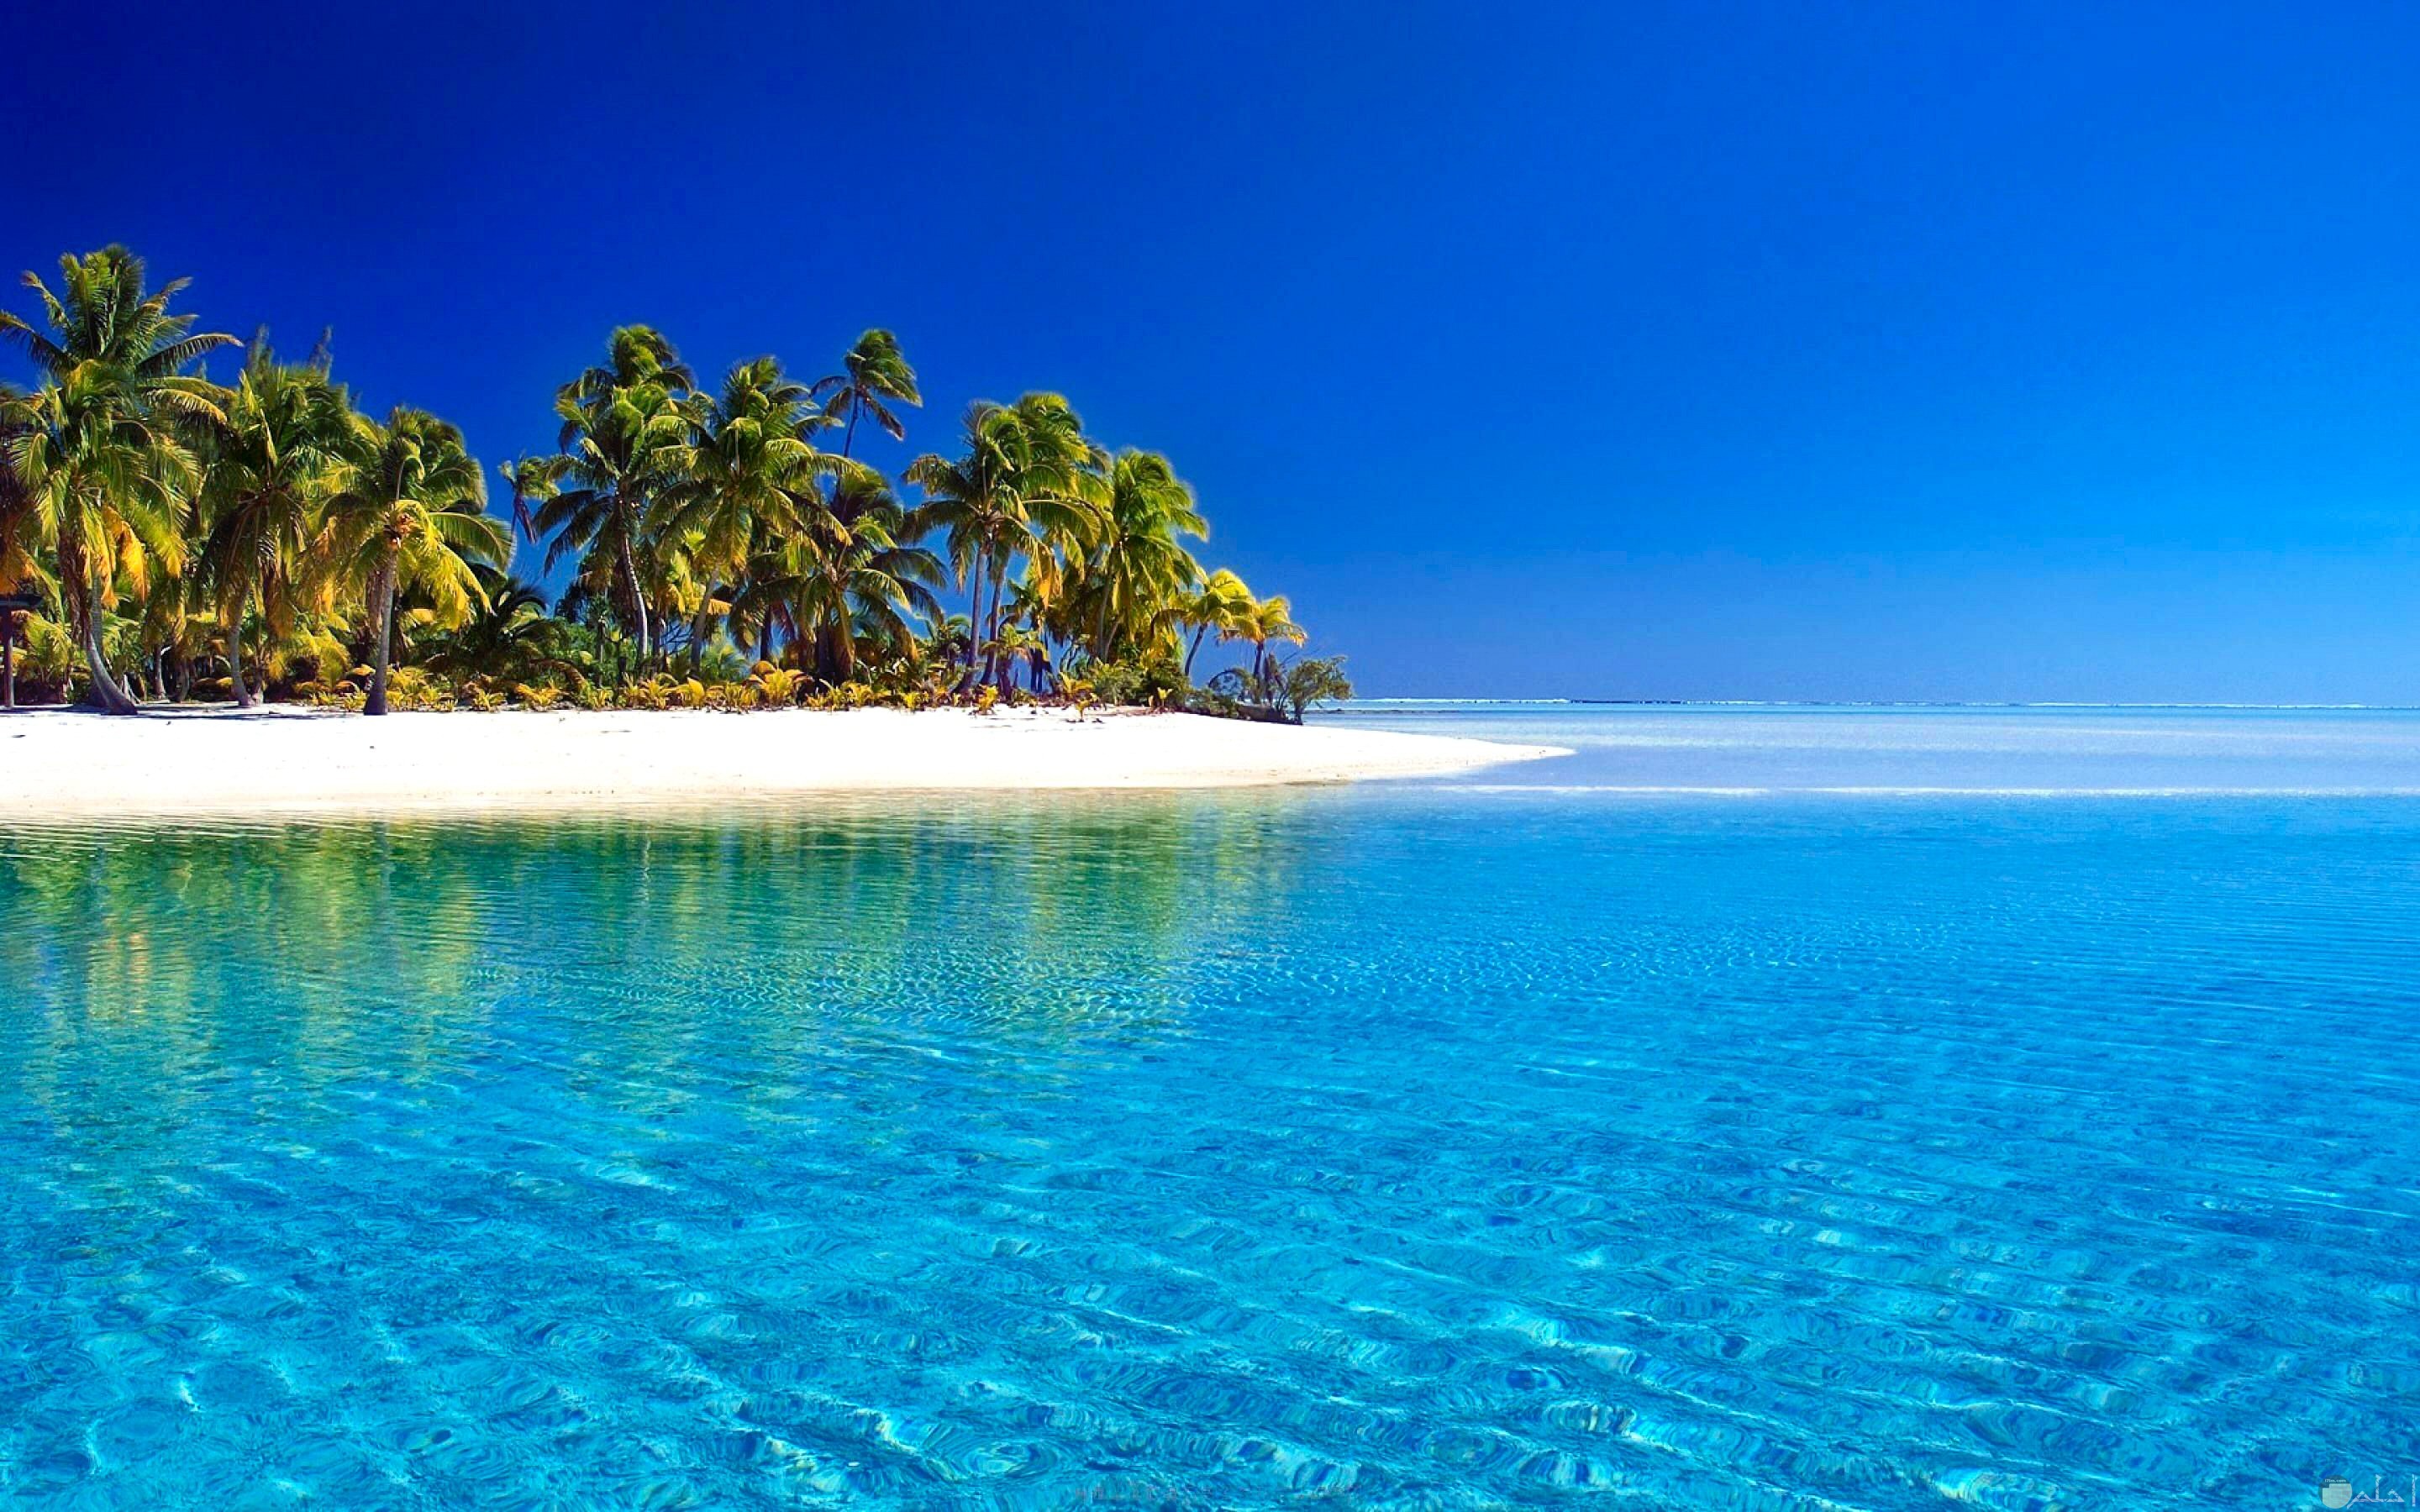 صورة بحر جميلة مع الرمال و النخيل و أشجار الشواطئ.